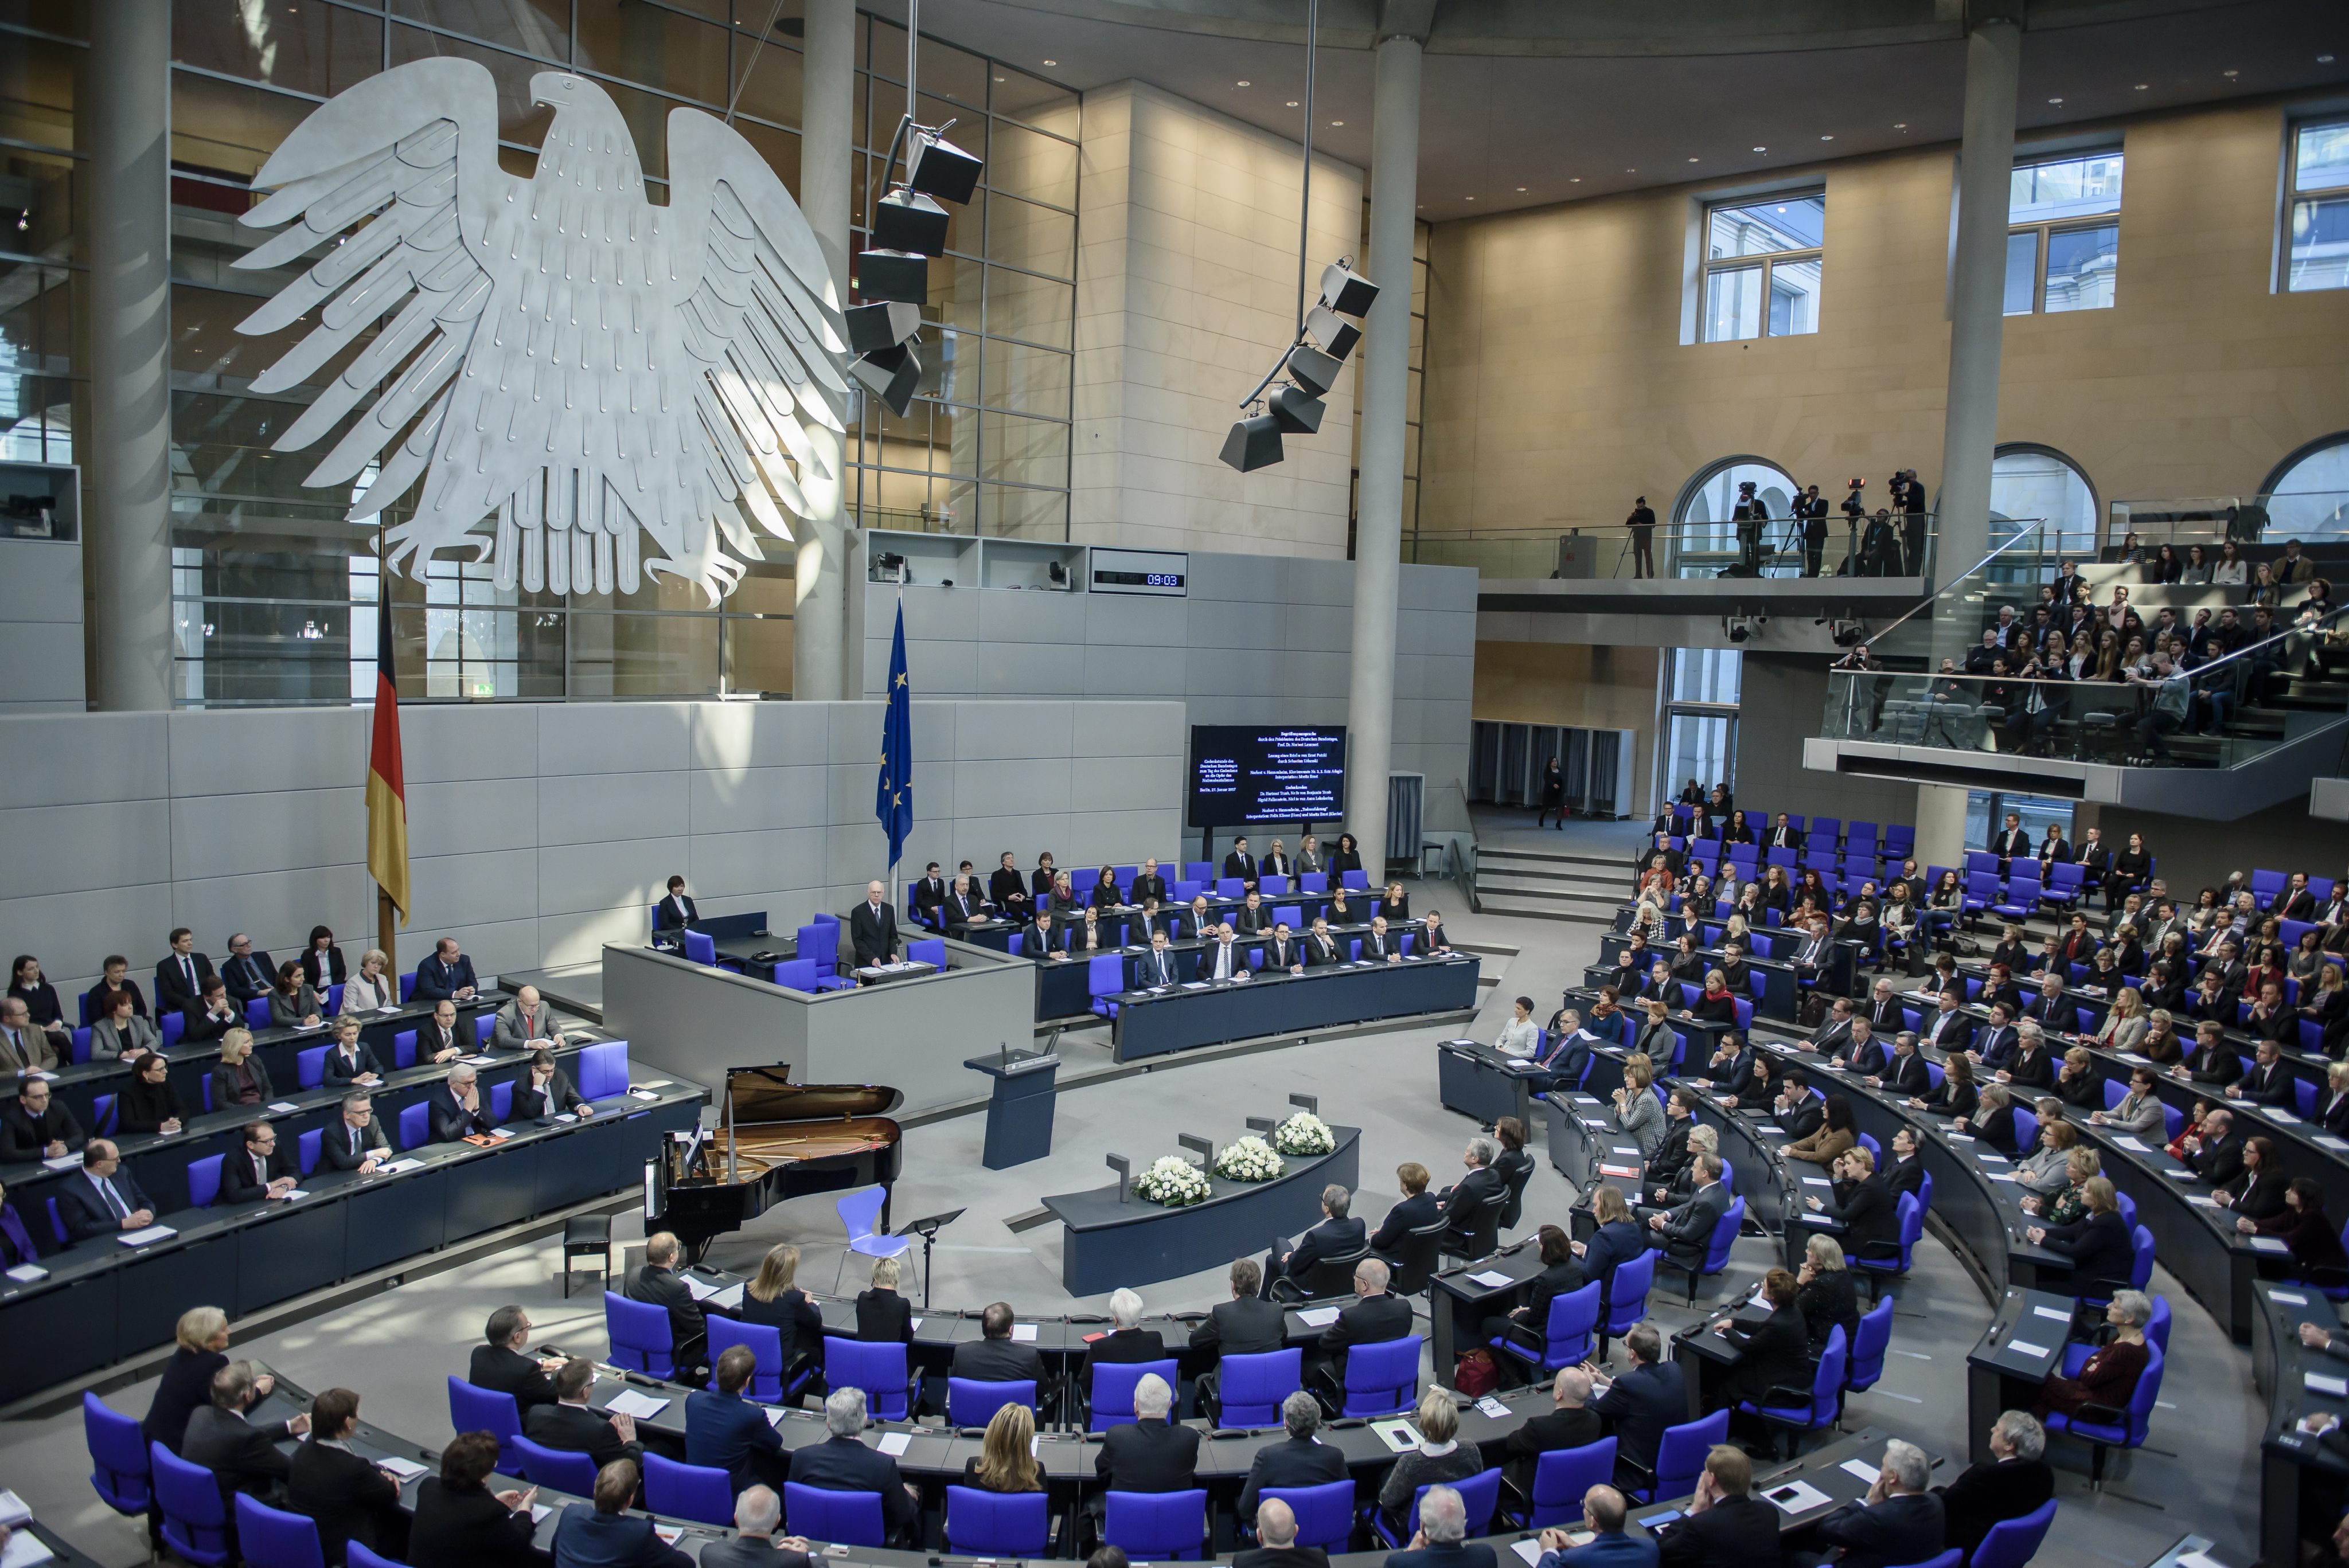 Μάχη μεταξύ CDU και SPD στα γκάλοπ, παγιώνονται στο ίδιο επίπεδο